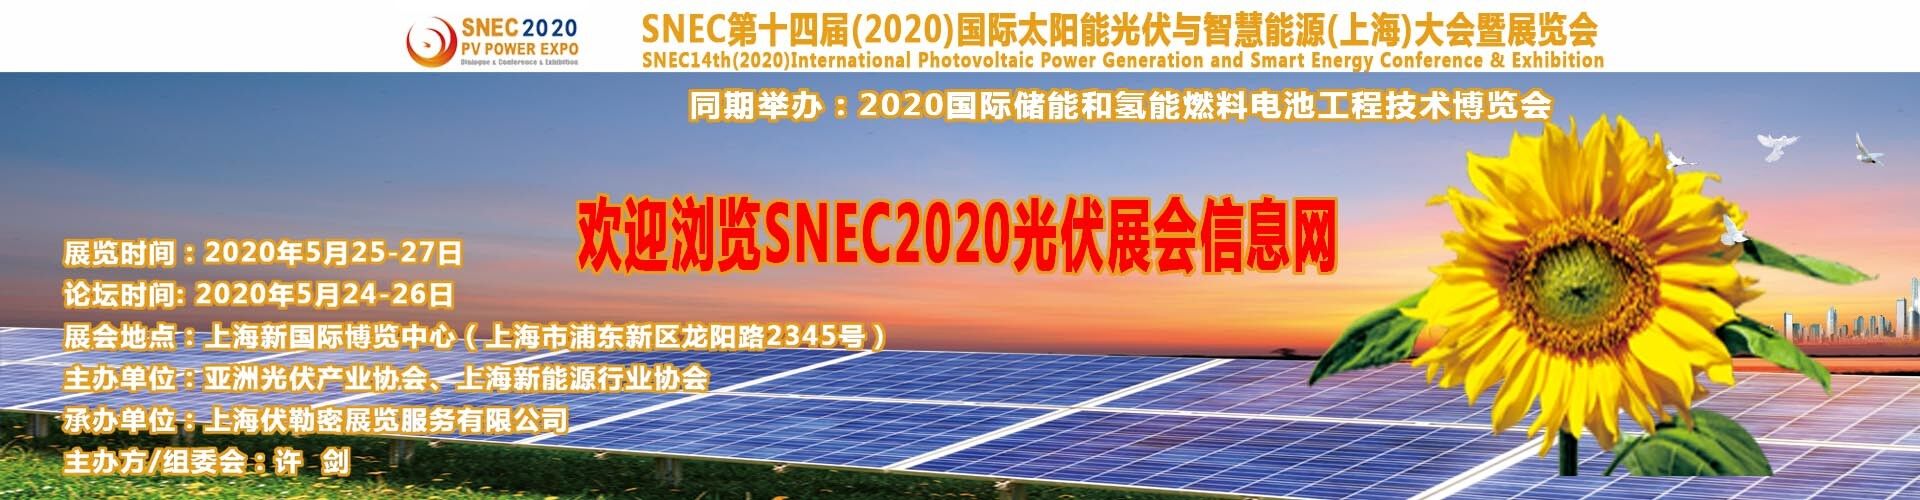 清潔能源展會|2018上海光伏展